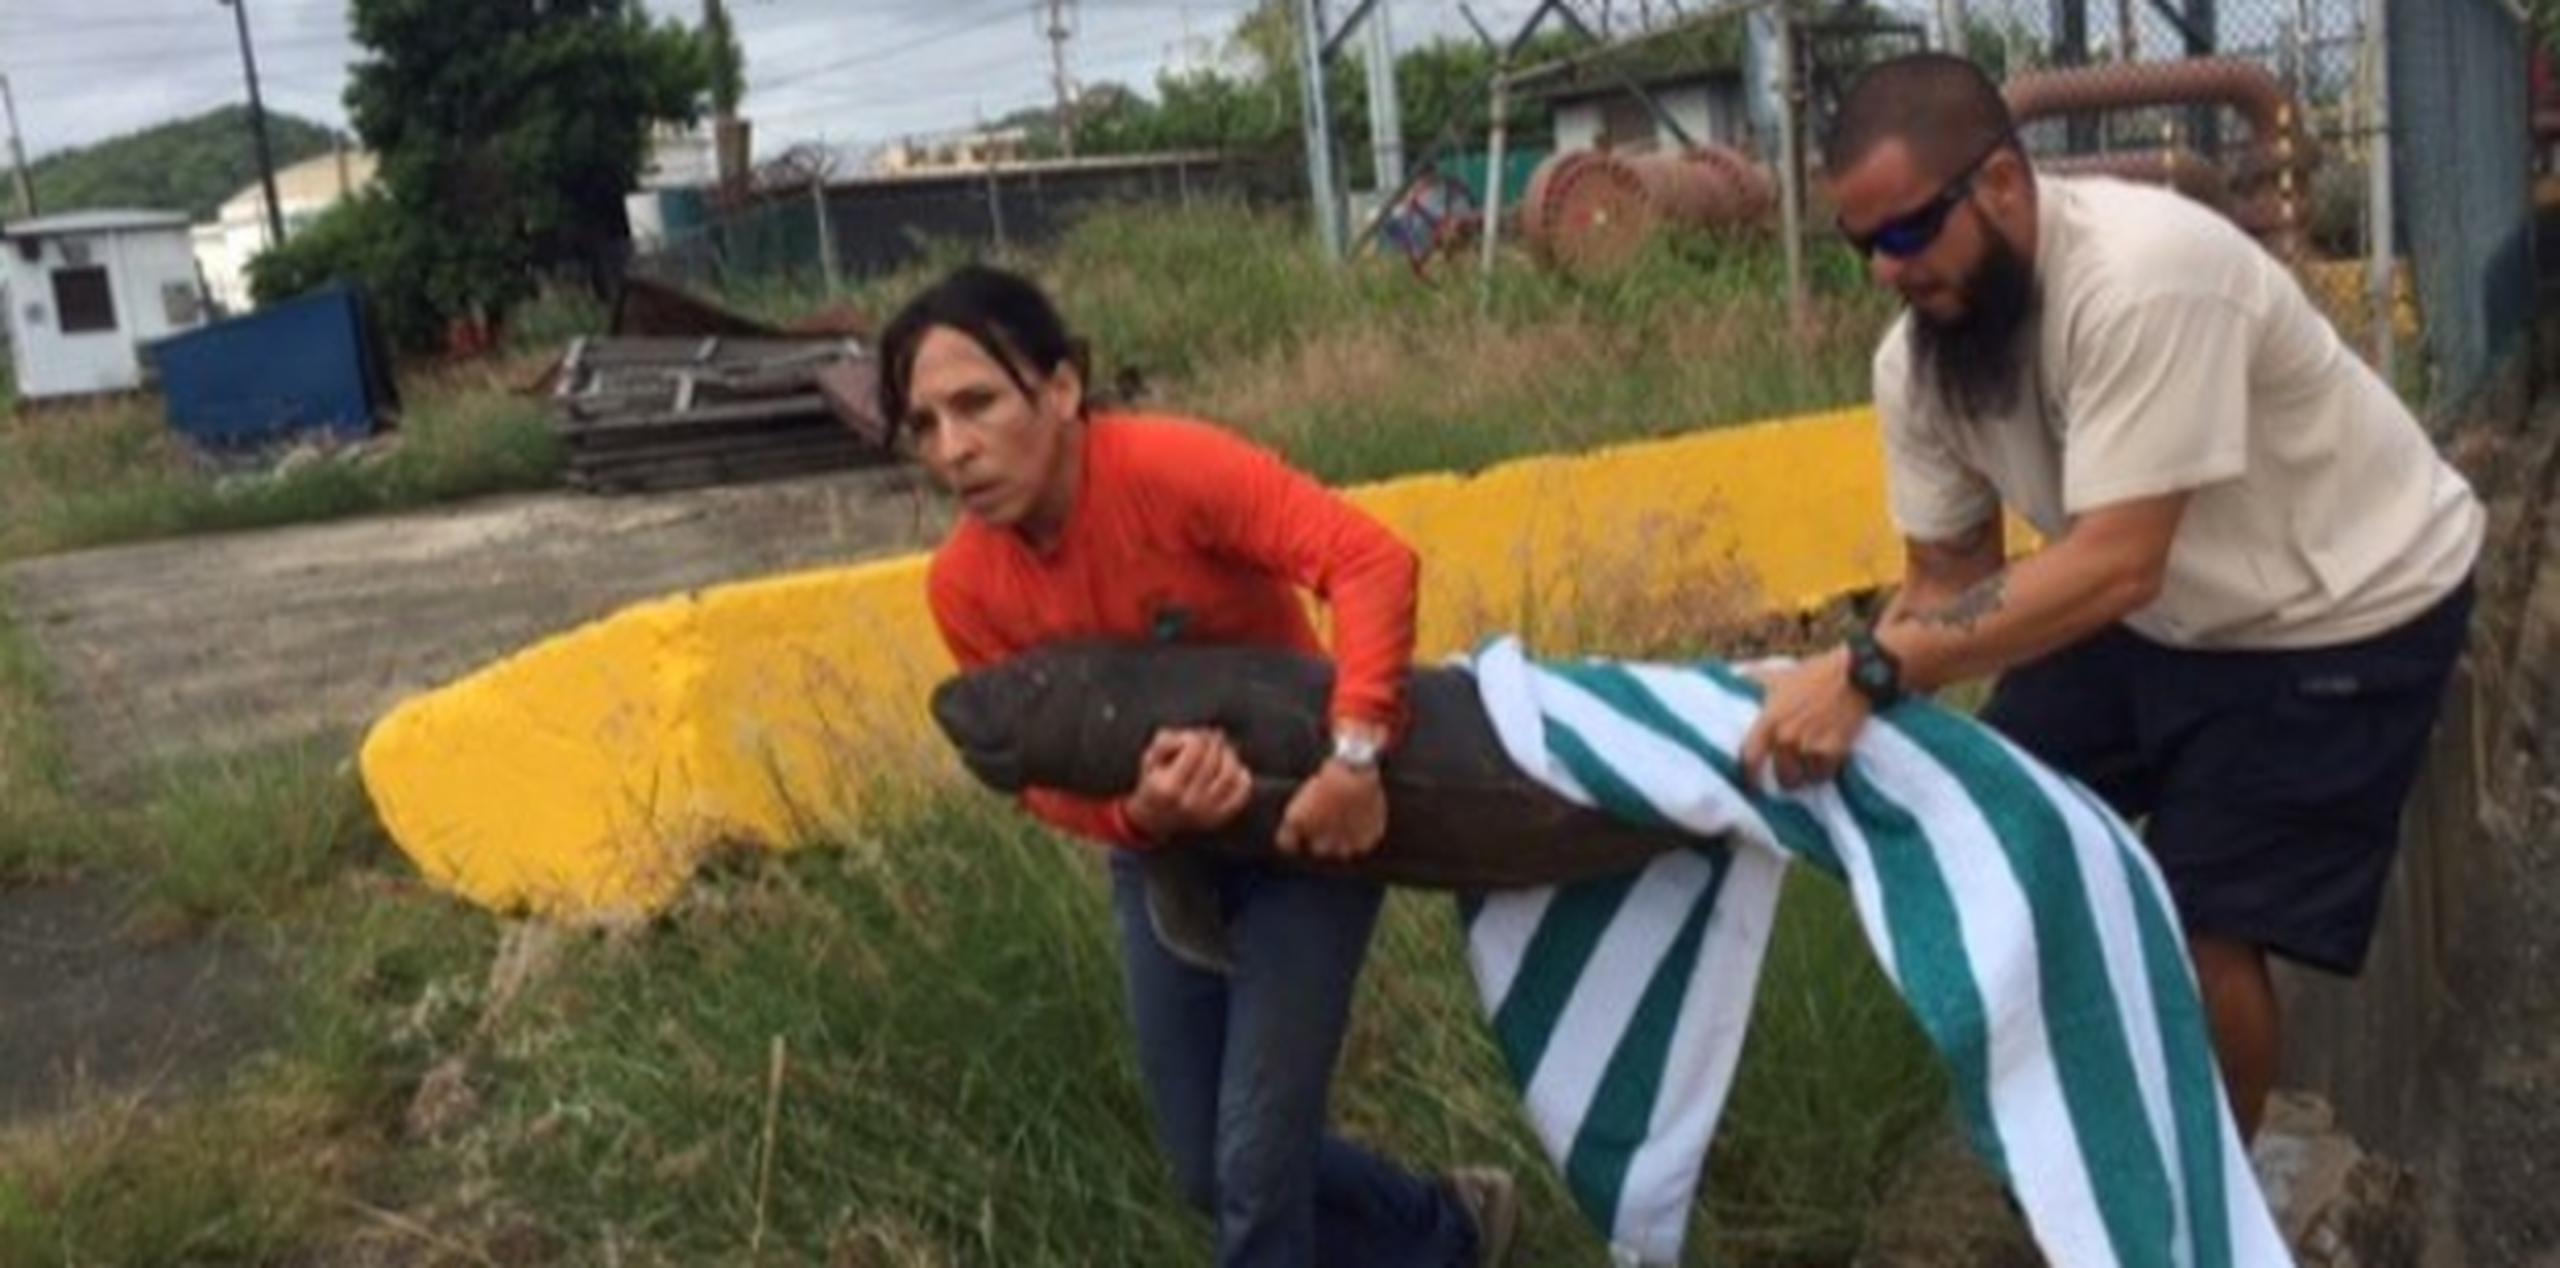 El bebé manatí fue rescatado esta mañana en el muelle ABC, entre San Juan y Guaynabo. (Suministrada)